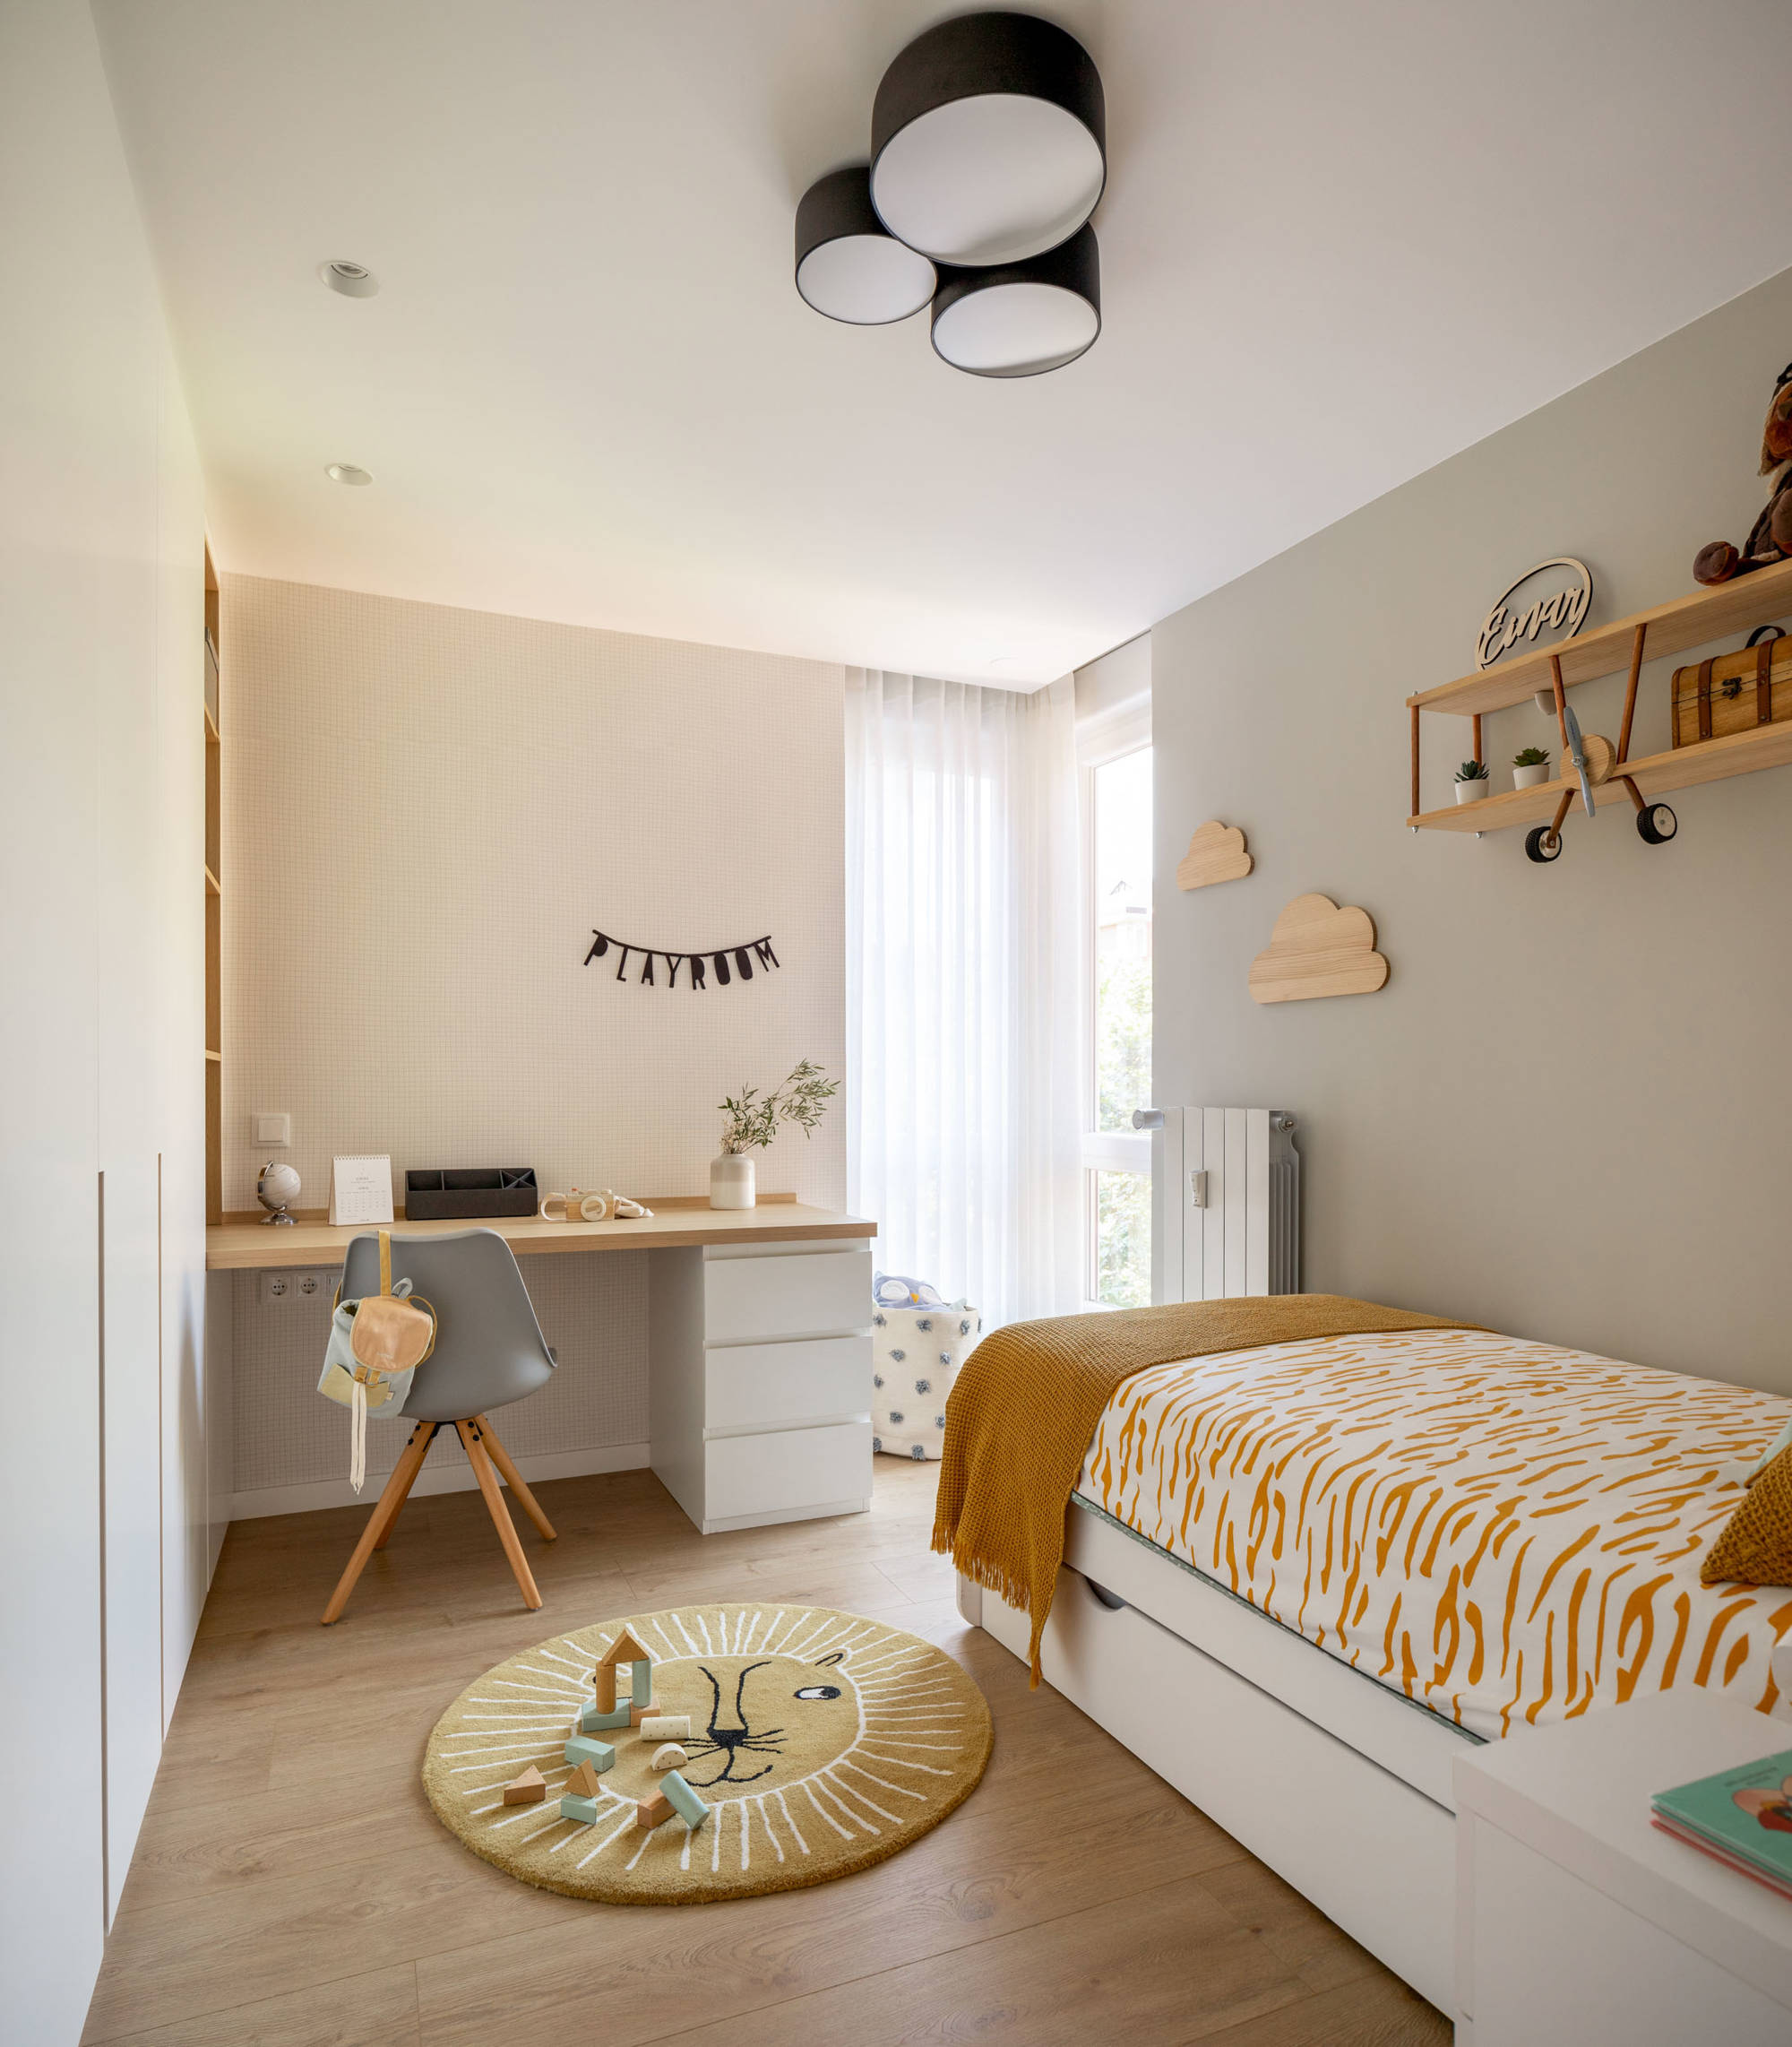 Dormitorio infantil con papel pintada a cuadros, alfombra redonda y mesita auxiliar blanca.